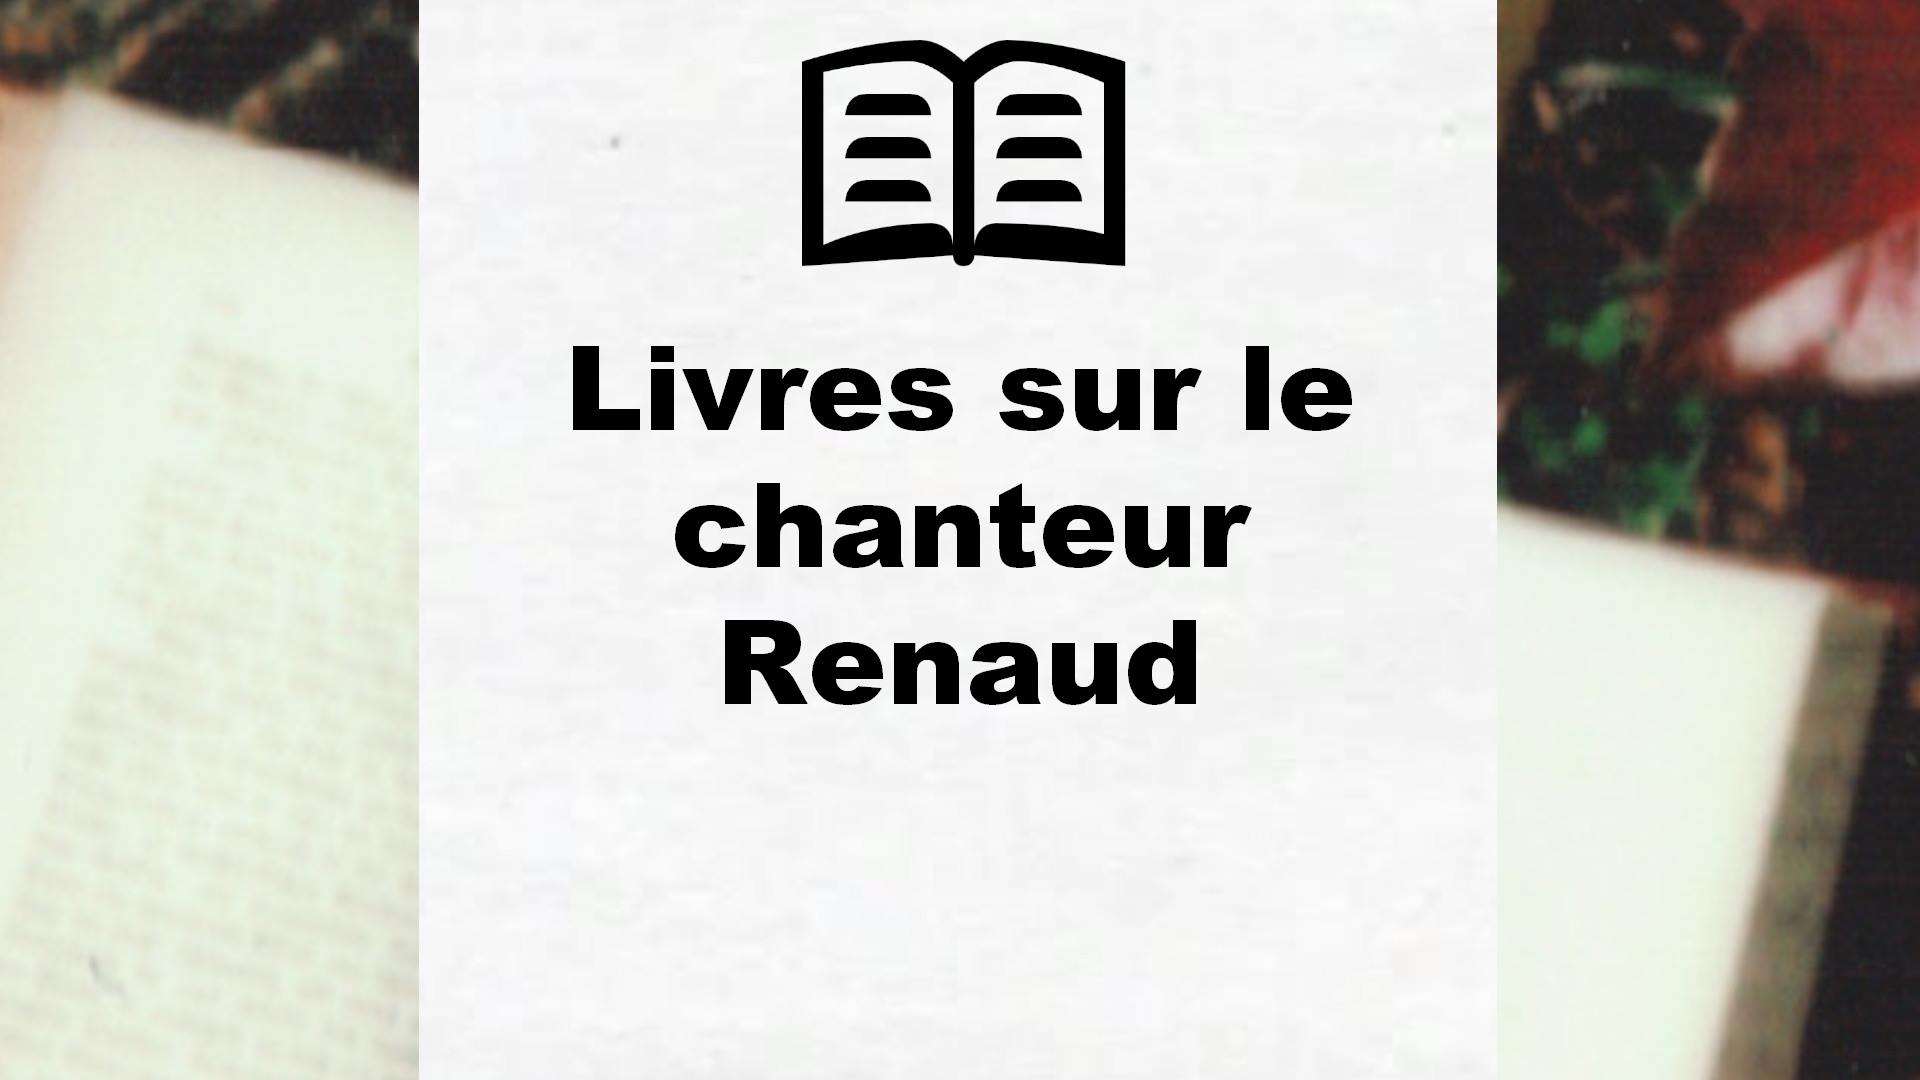 Livres sur le chanteur Renaud